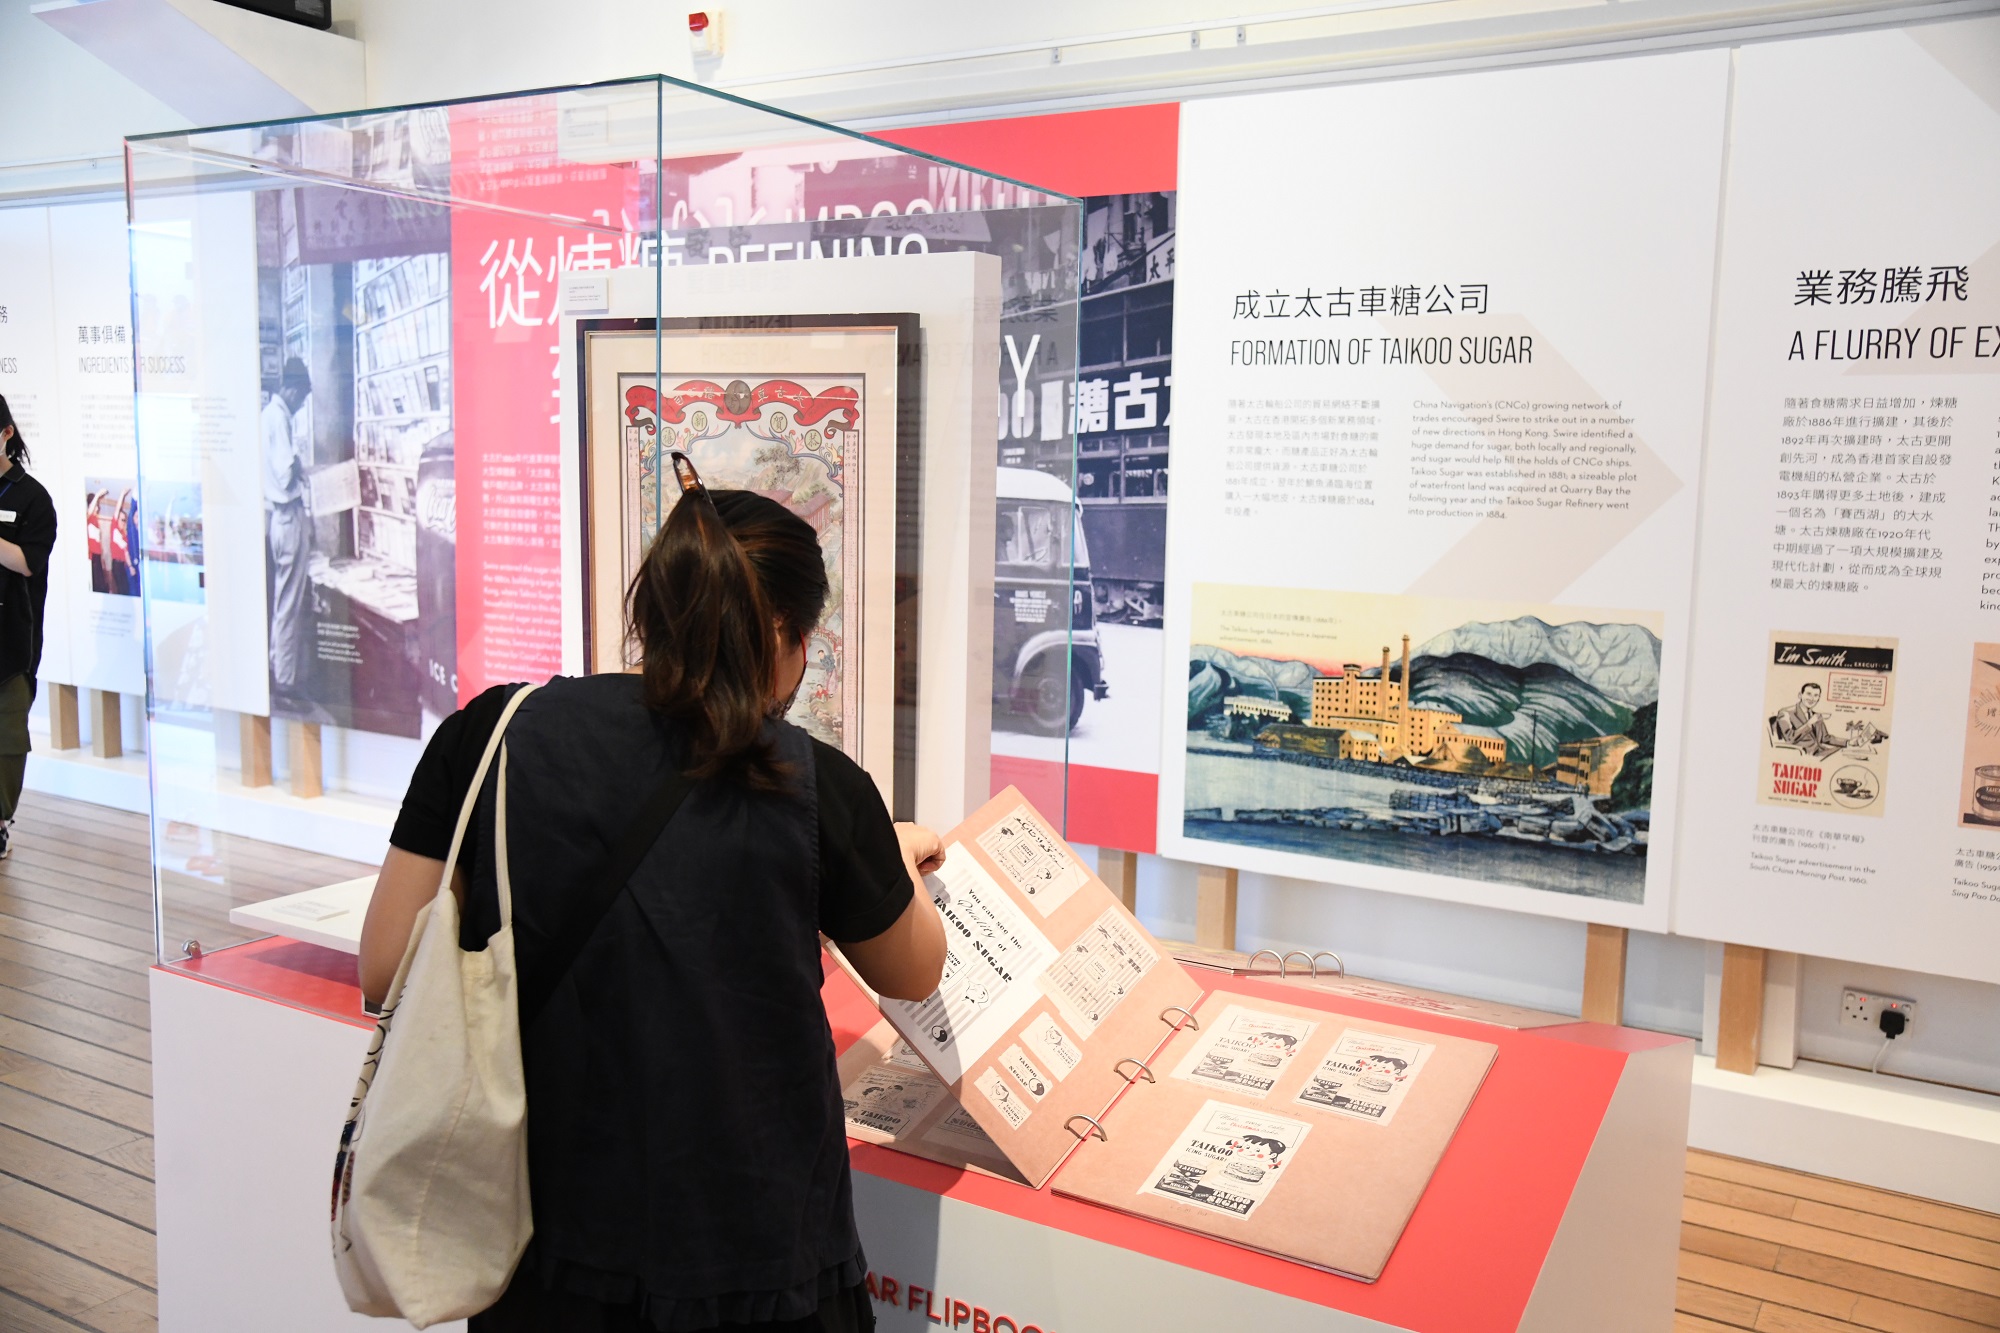 【展覽】太古150周年紀念展 回顧香港一個半世紀歷史